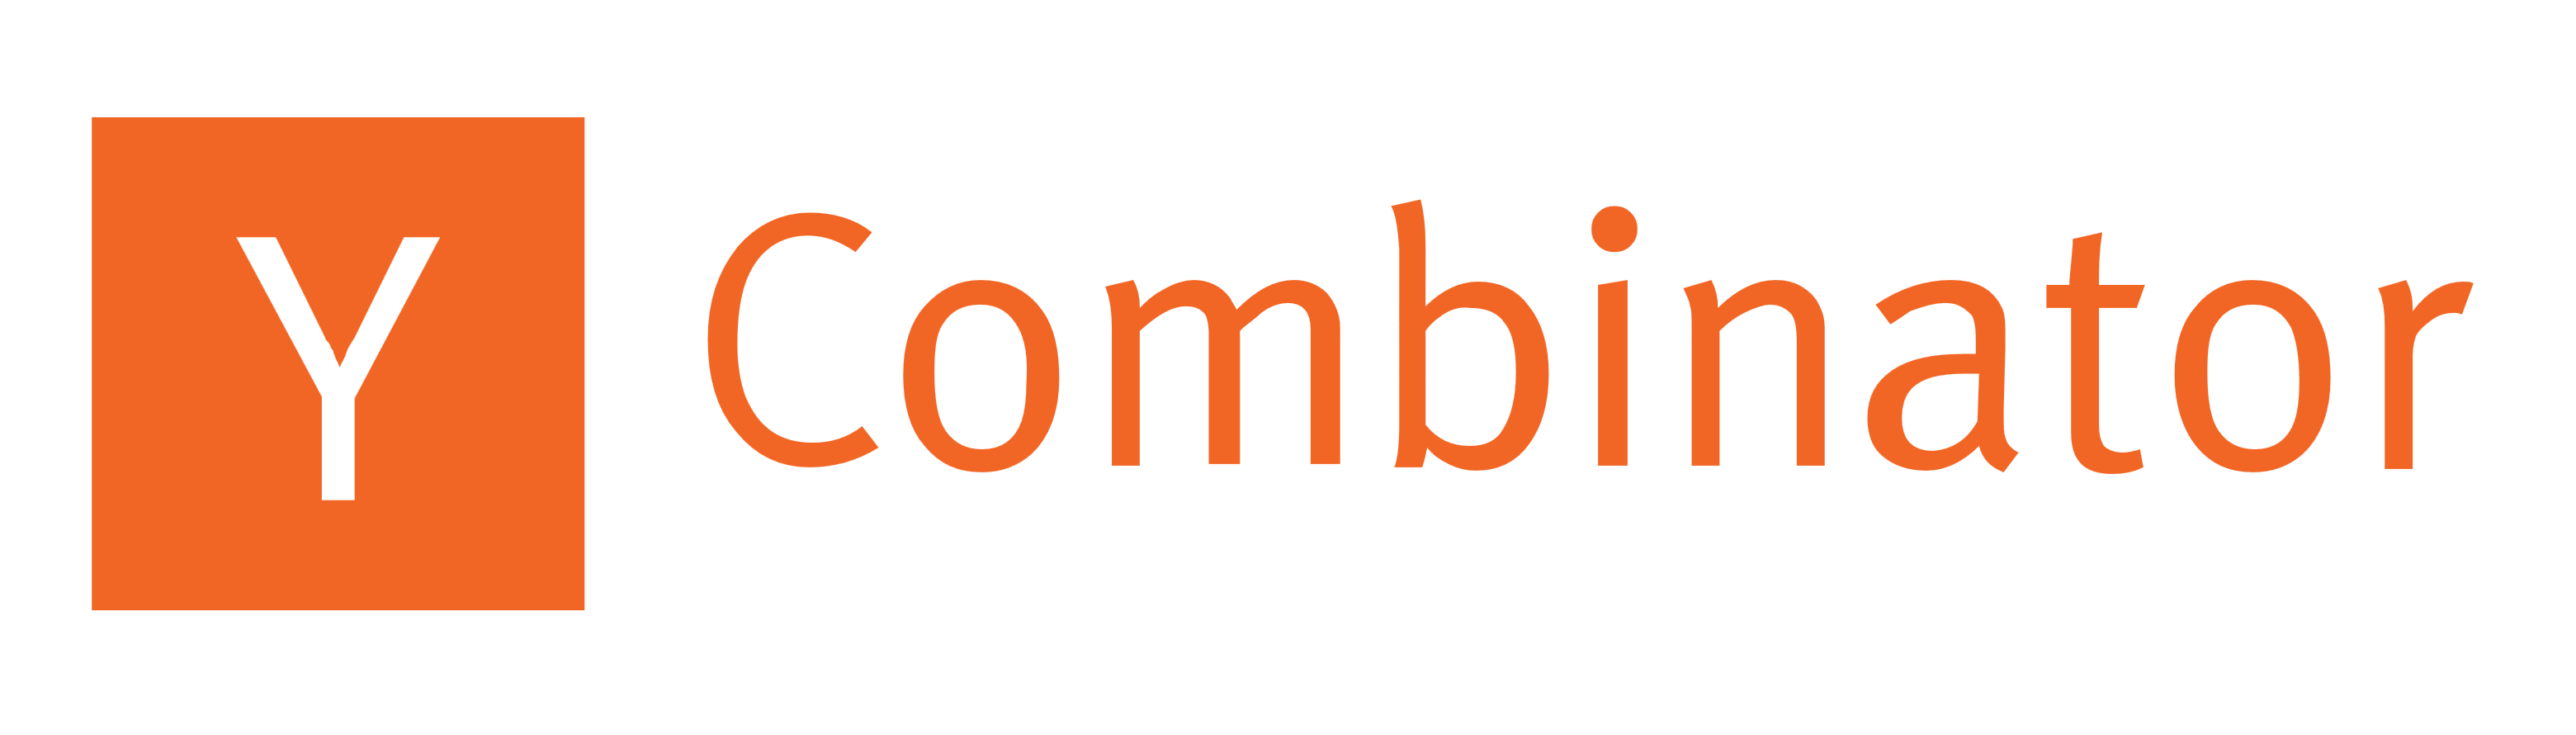 y_combinator_logo